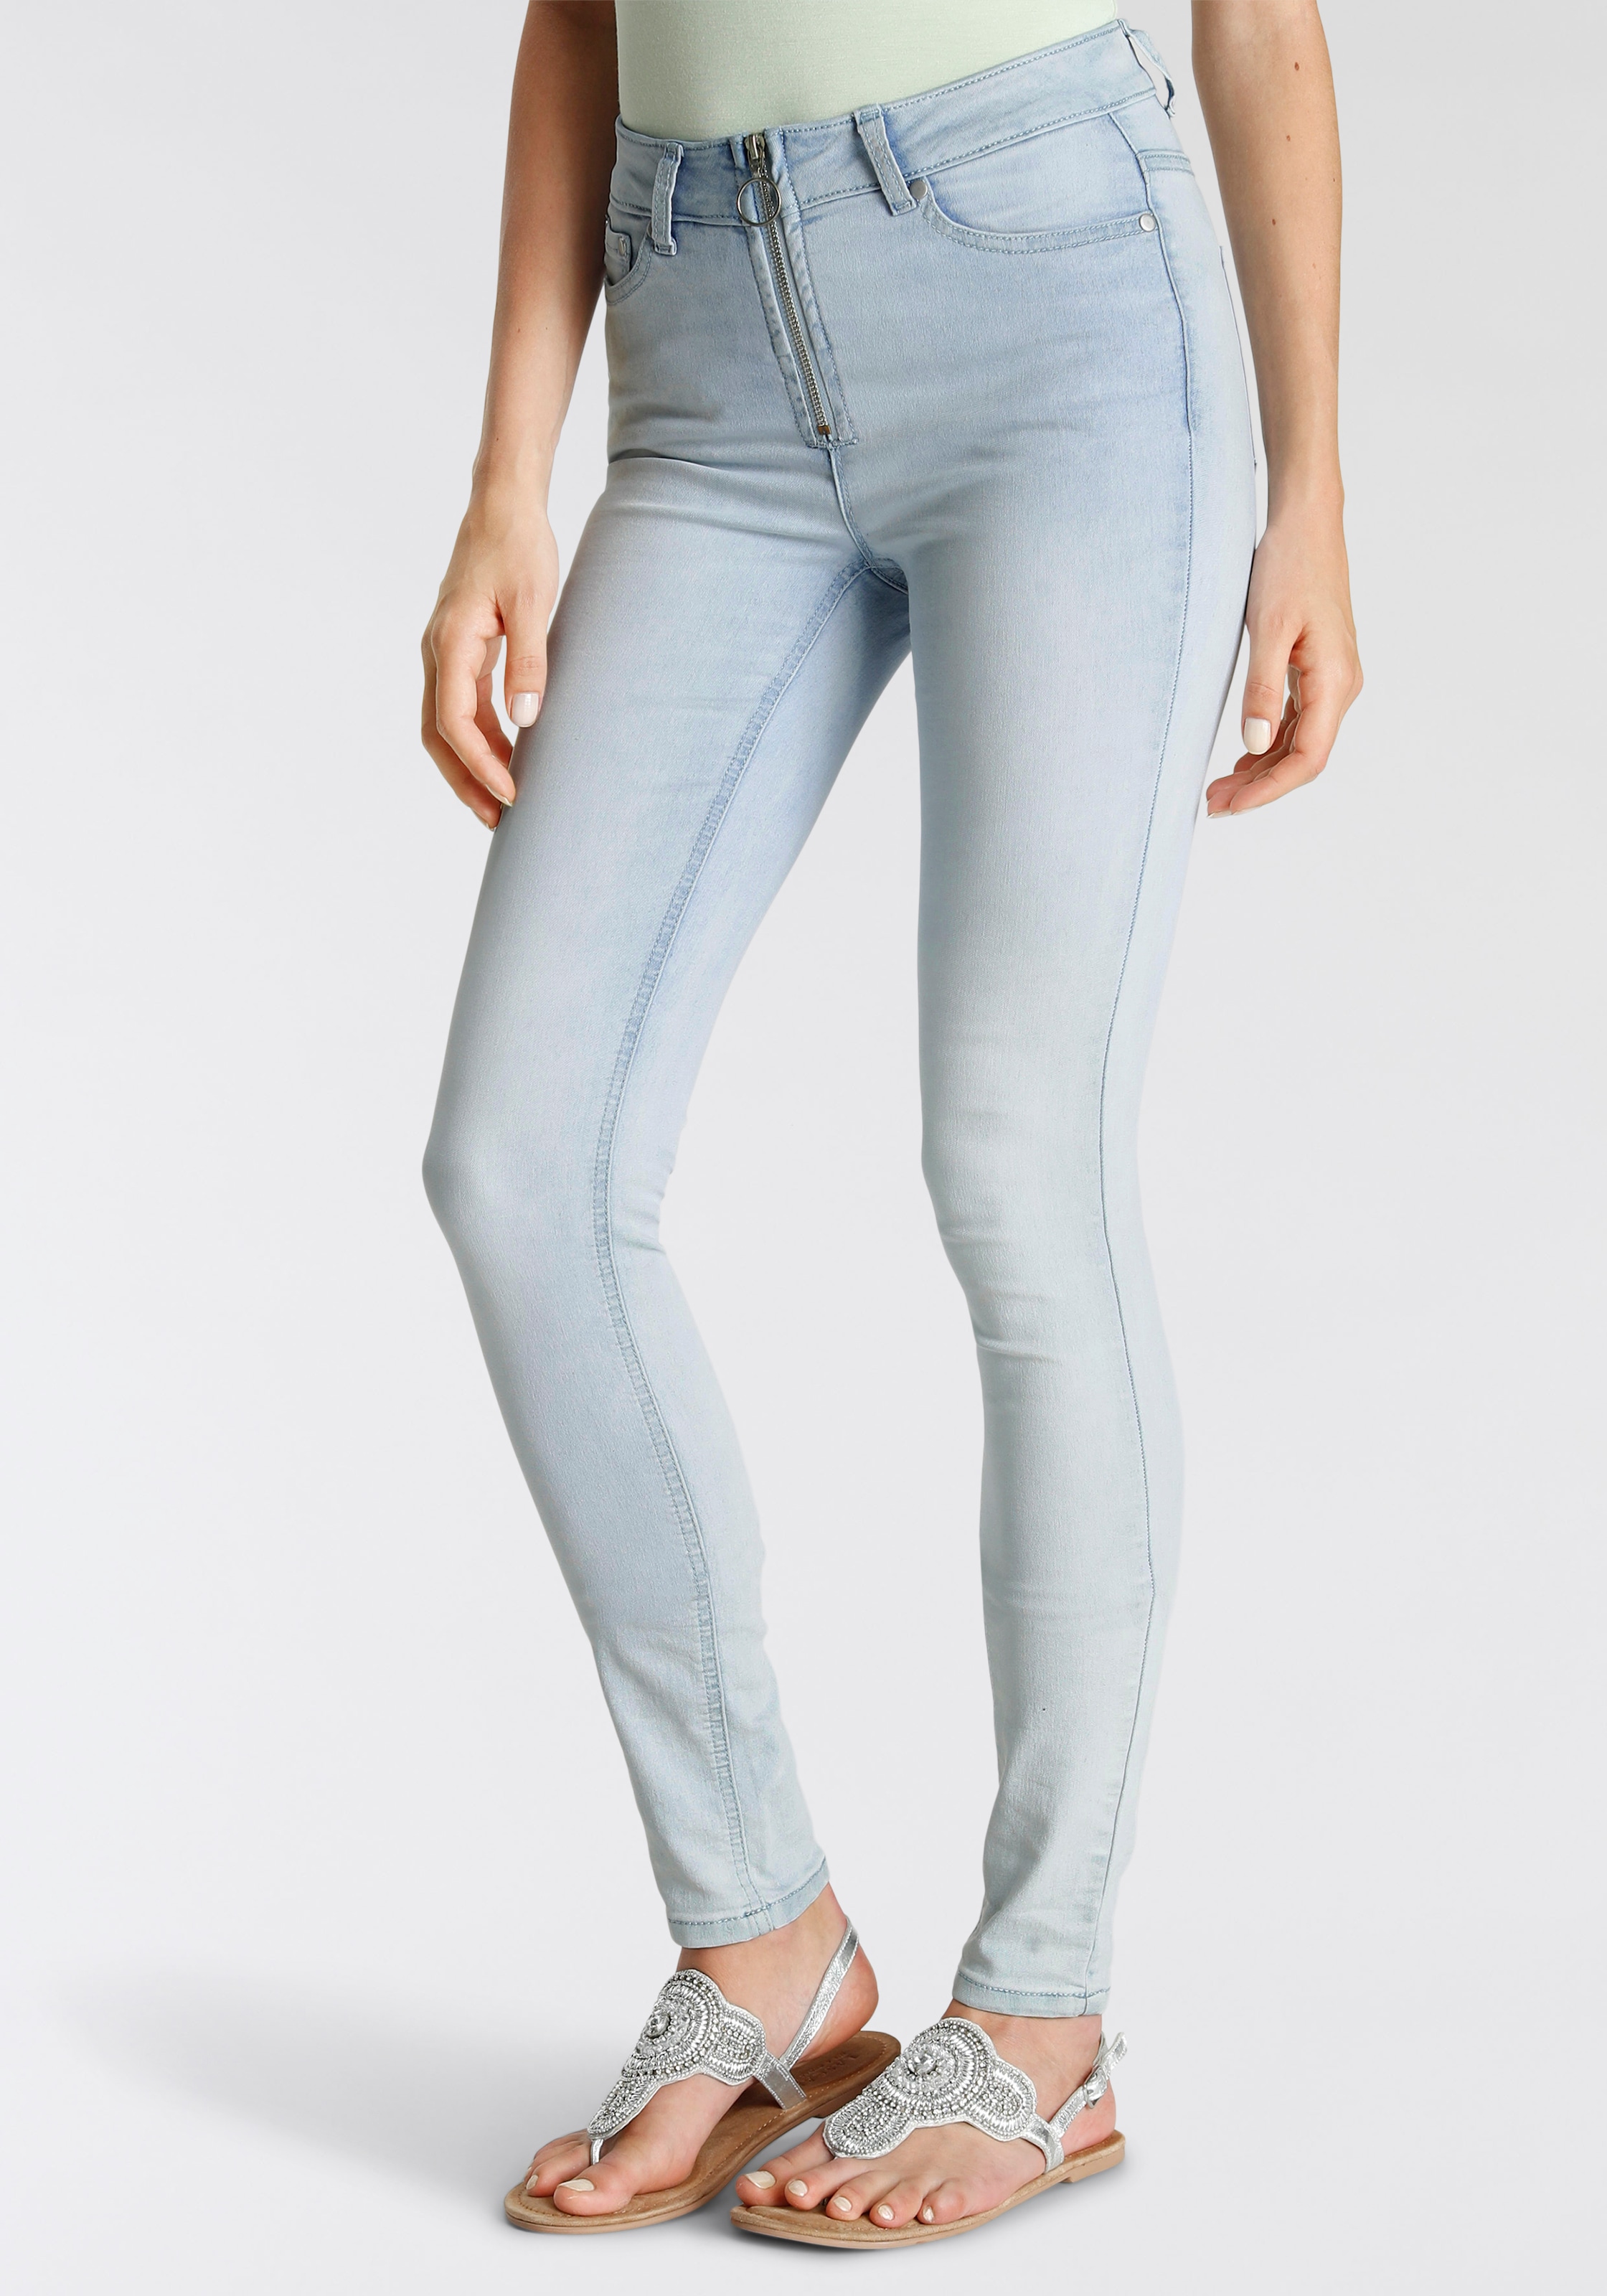 Shop Online NEUE KOLLEKTION Reißverschluss-Detail im - Skinny-fit-Jeans, Melrose mit OTTO